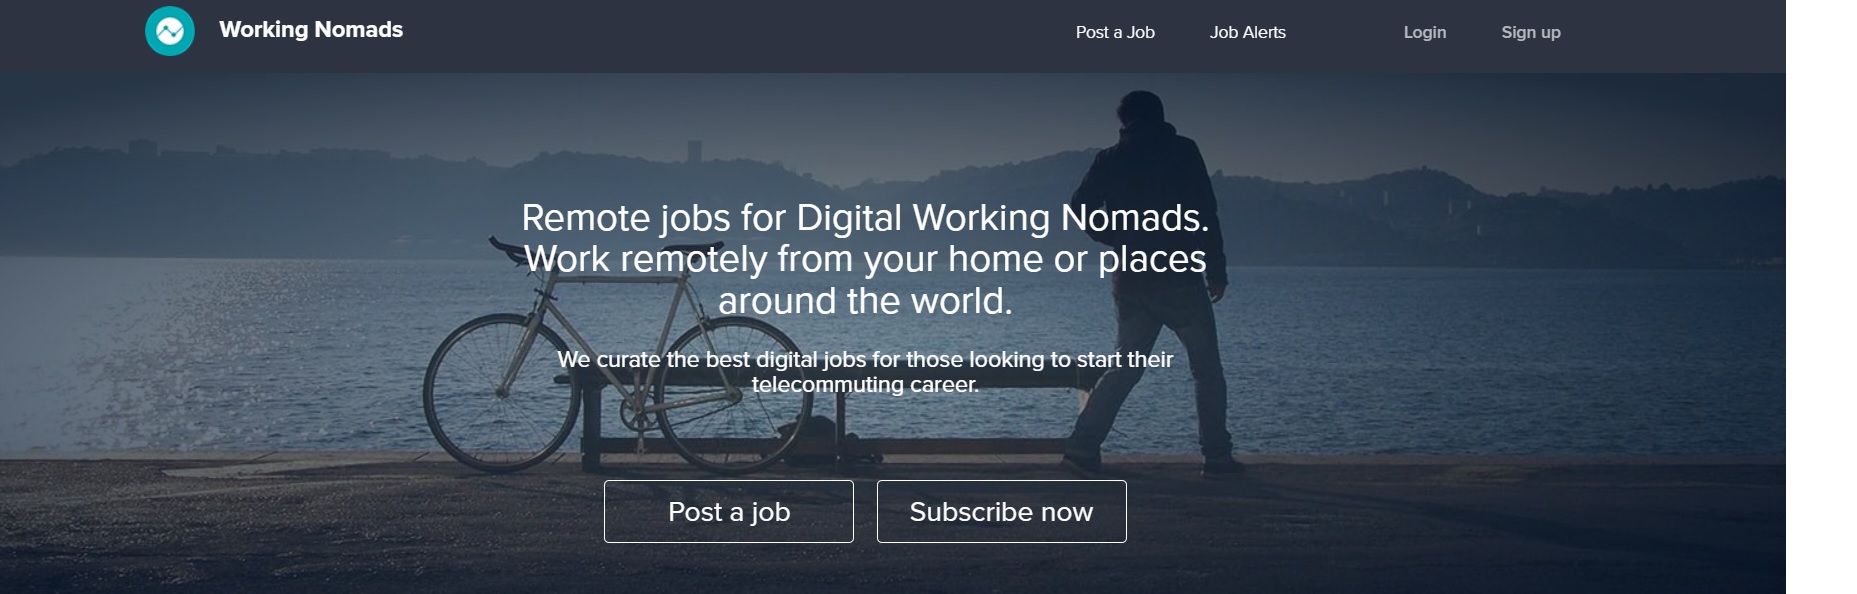 Working nomads, una opción para dar los primeros pasos en el mundo del teletrabajo